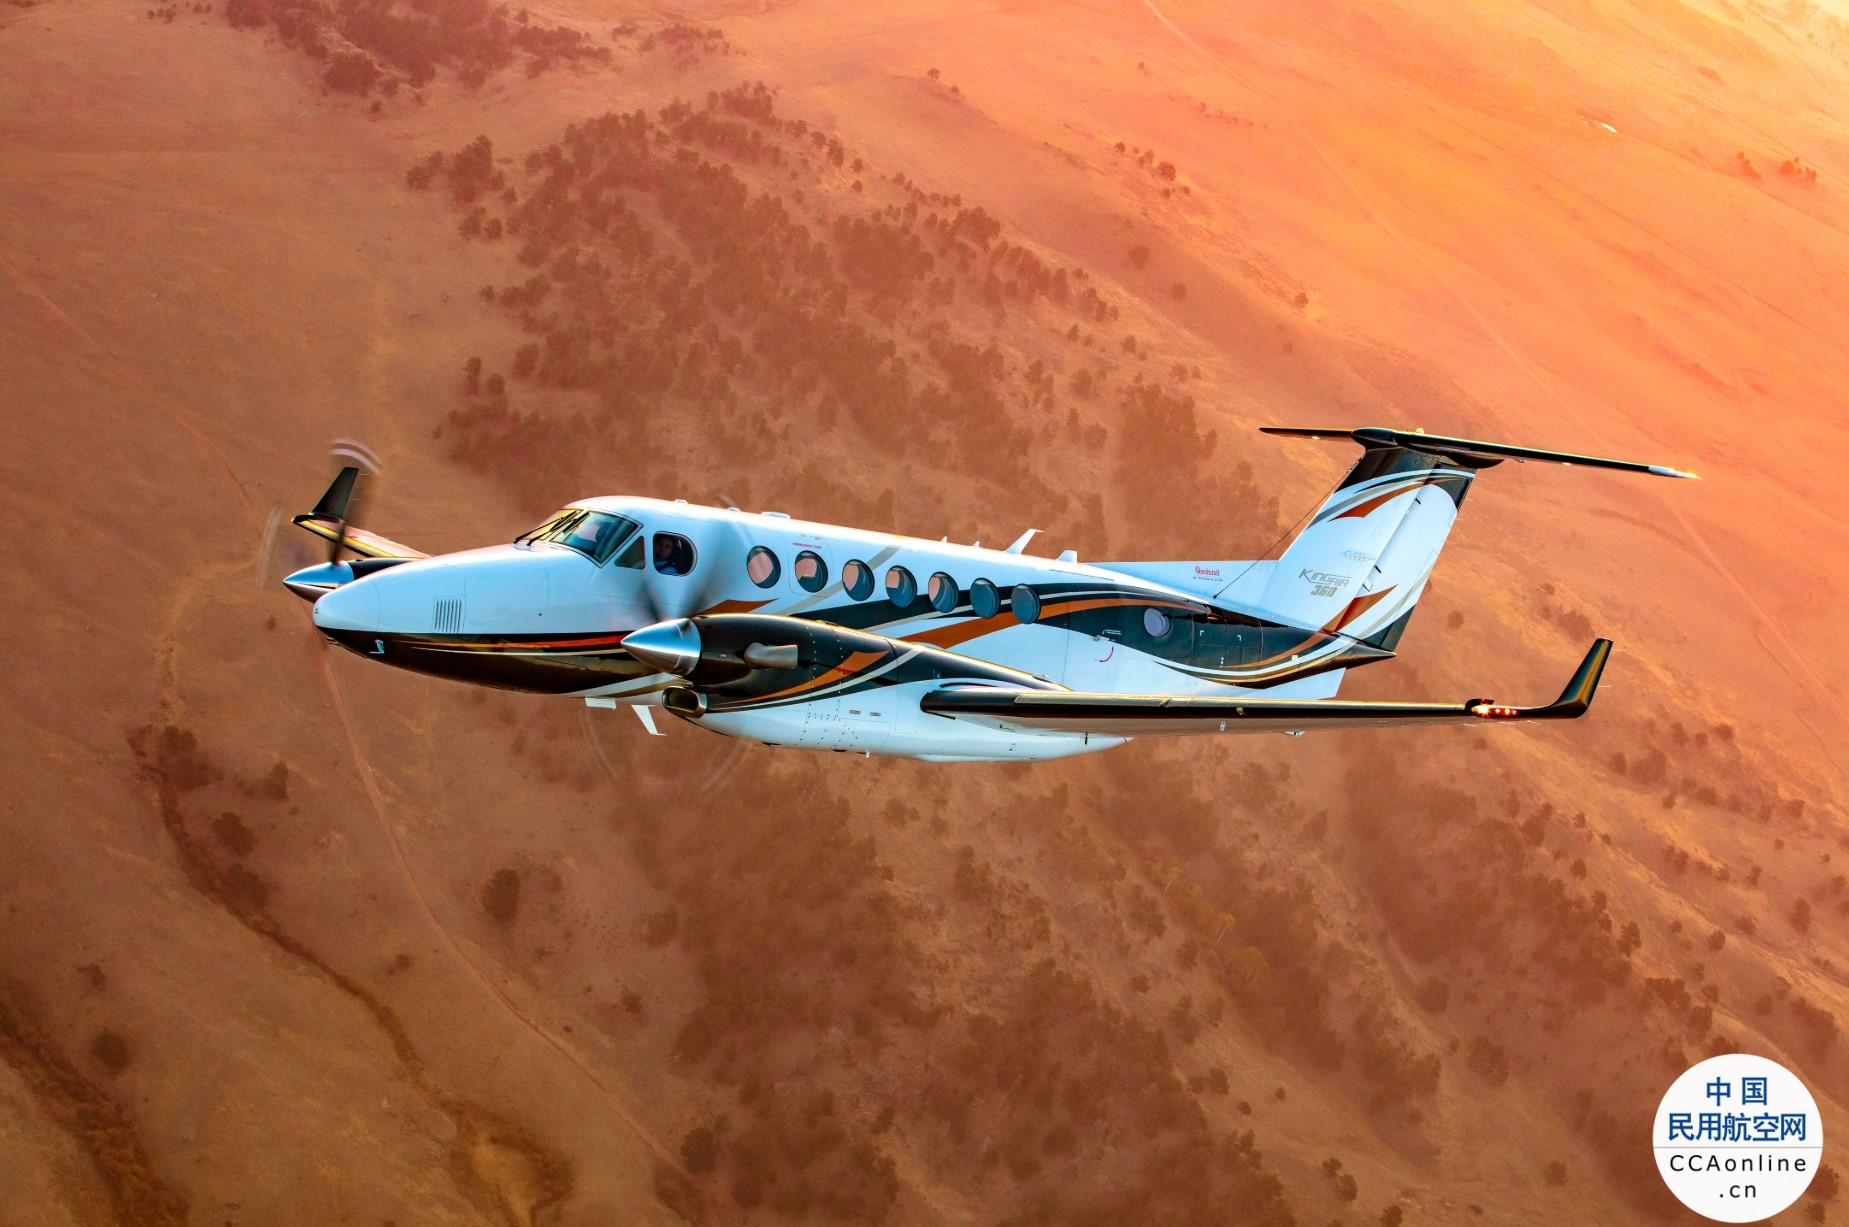 比奇360空中国王涡桨飞机全新标配电动空调，带来更酷爽飞行体验